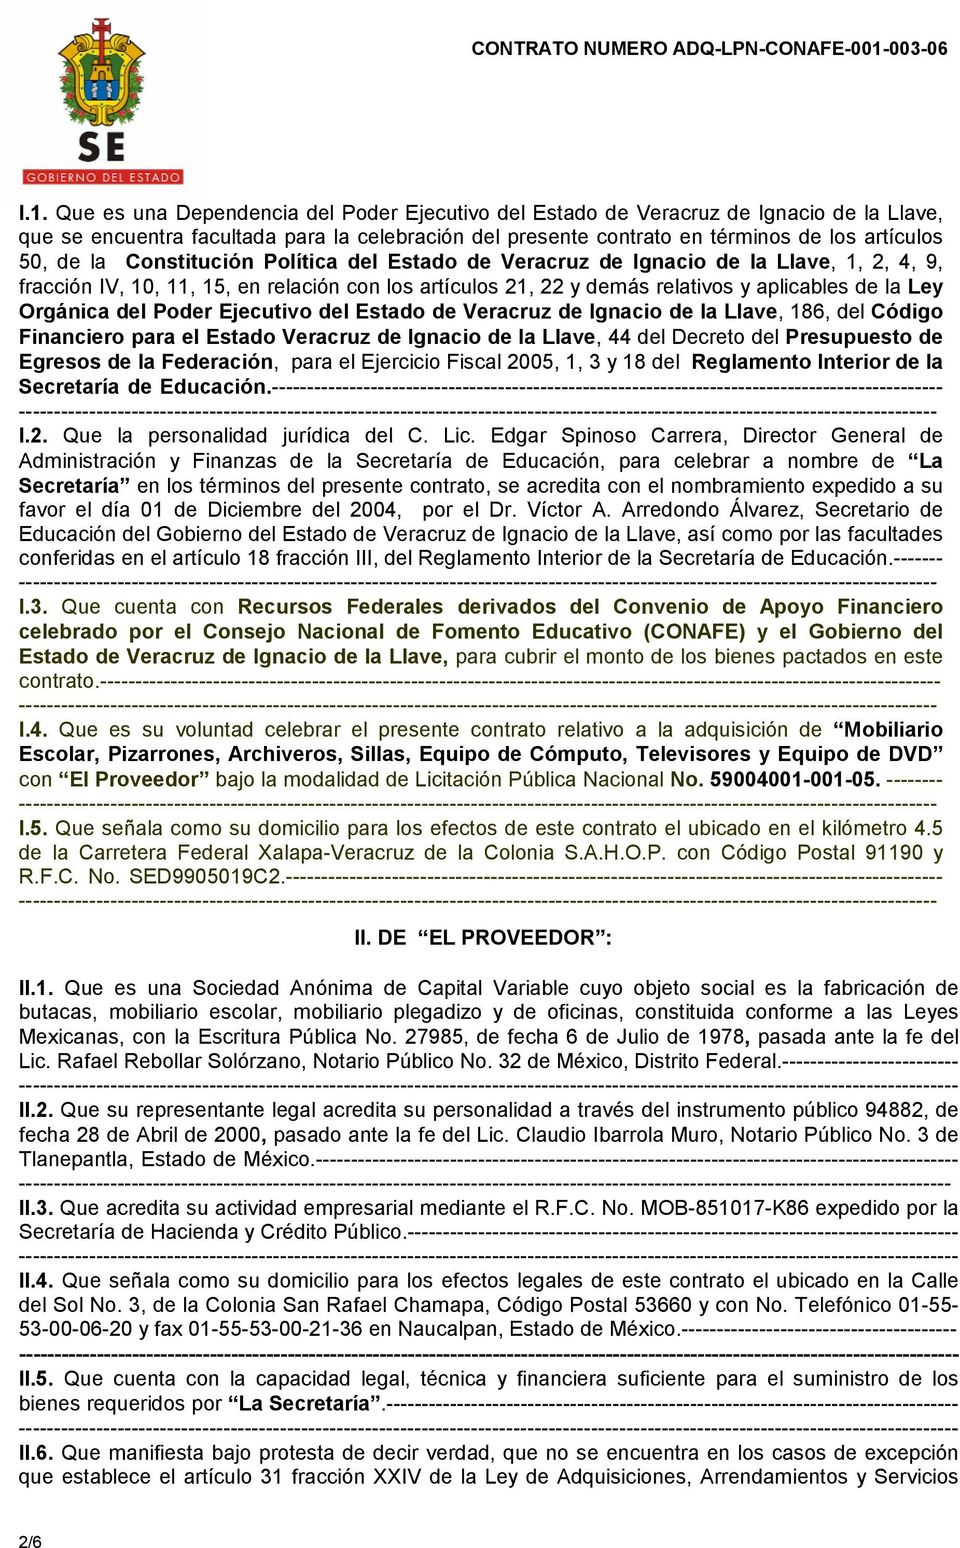 Que es una Dependencia del Poder Ejecutivo del Estado de Veracruz de Ignacio de la Llave, que se encuentra facultada para la celebración del presente contrato en términos de los artículos 50, de la